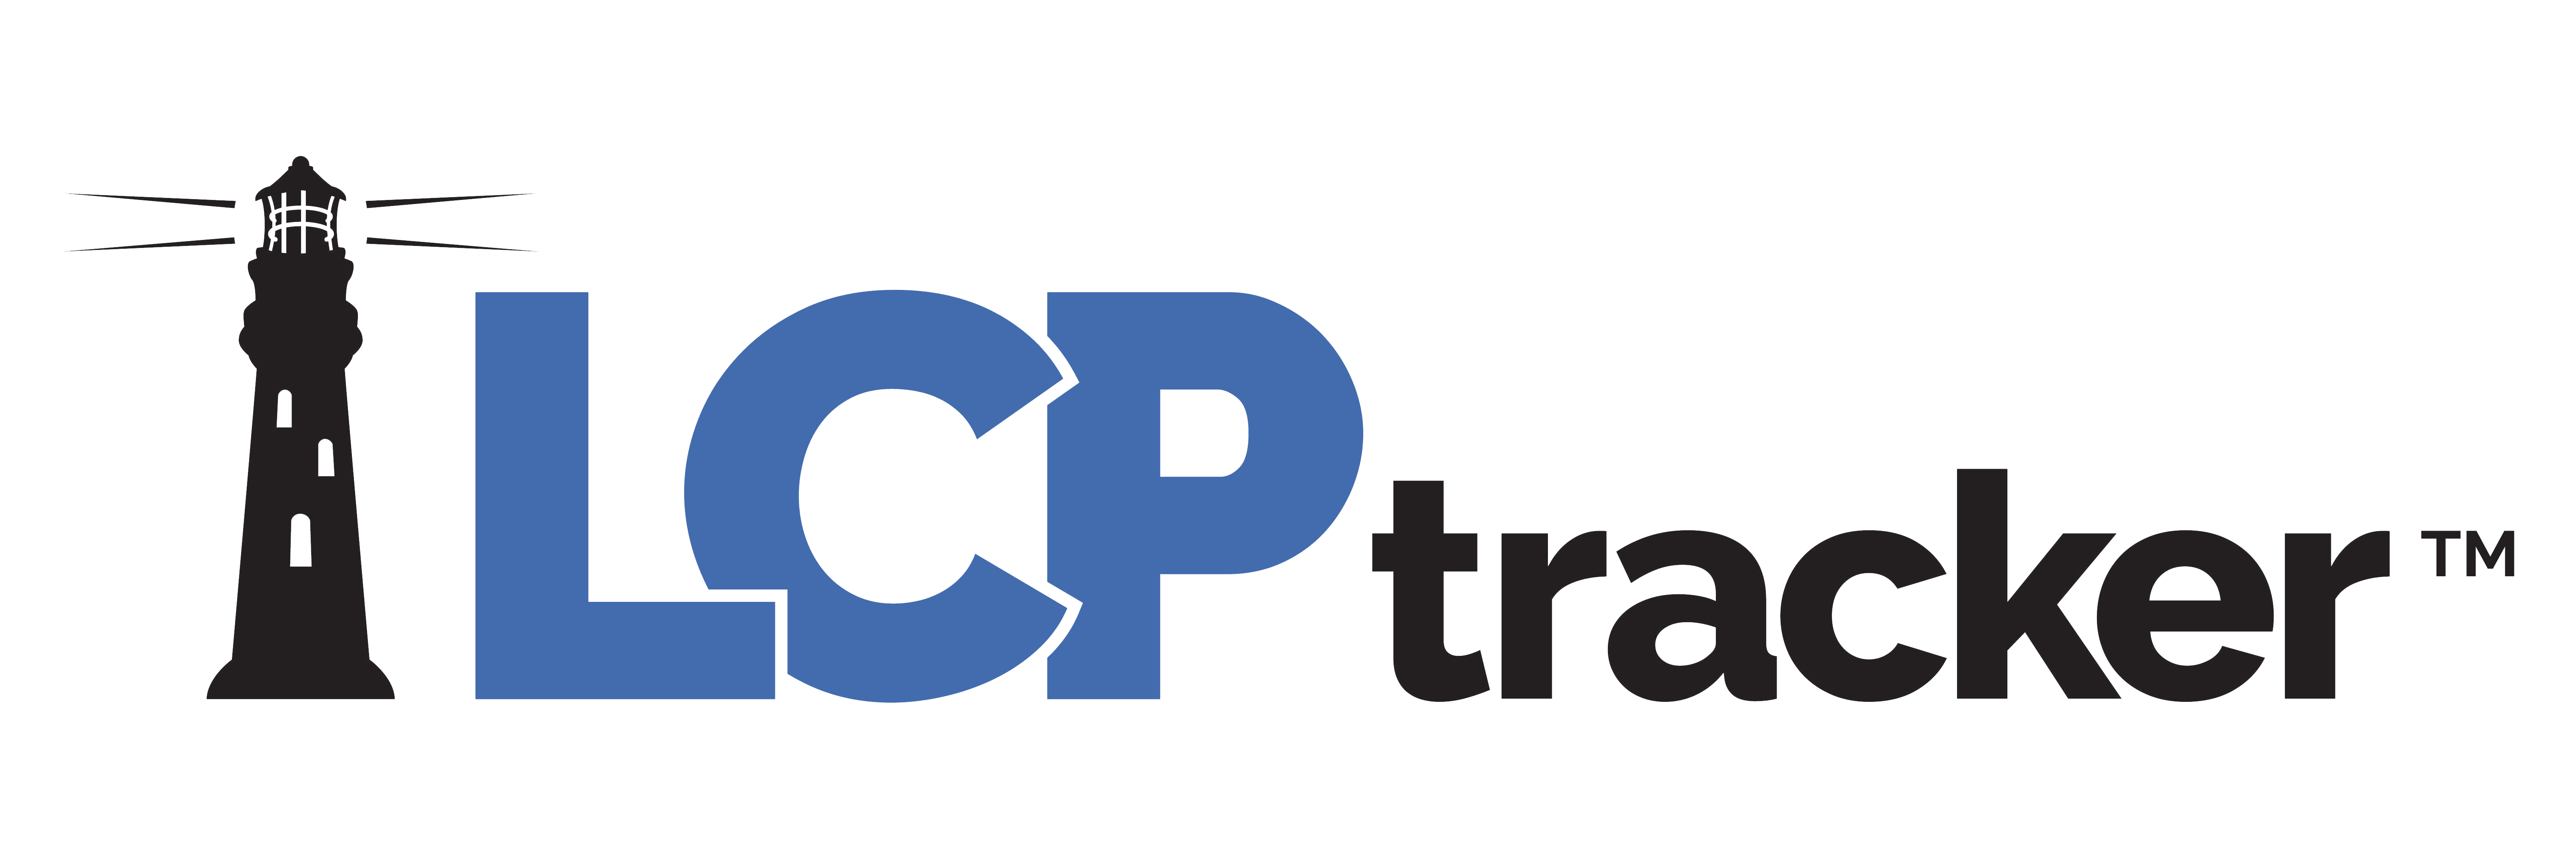 LCPtracker Full Color Logo - TM